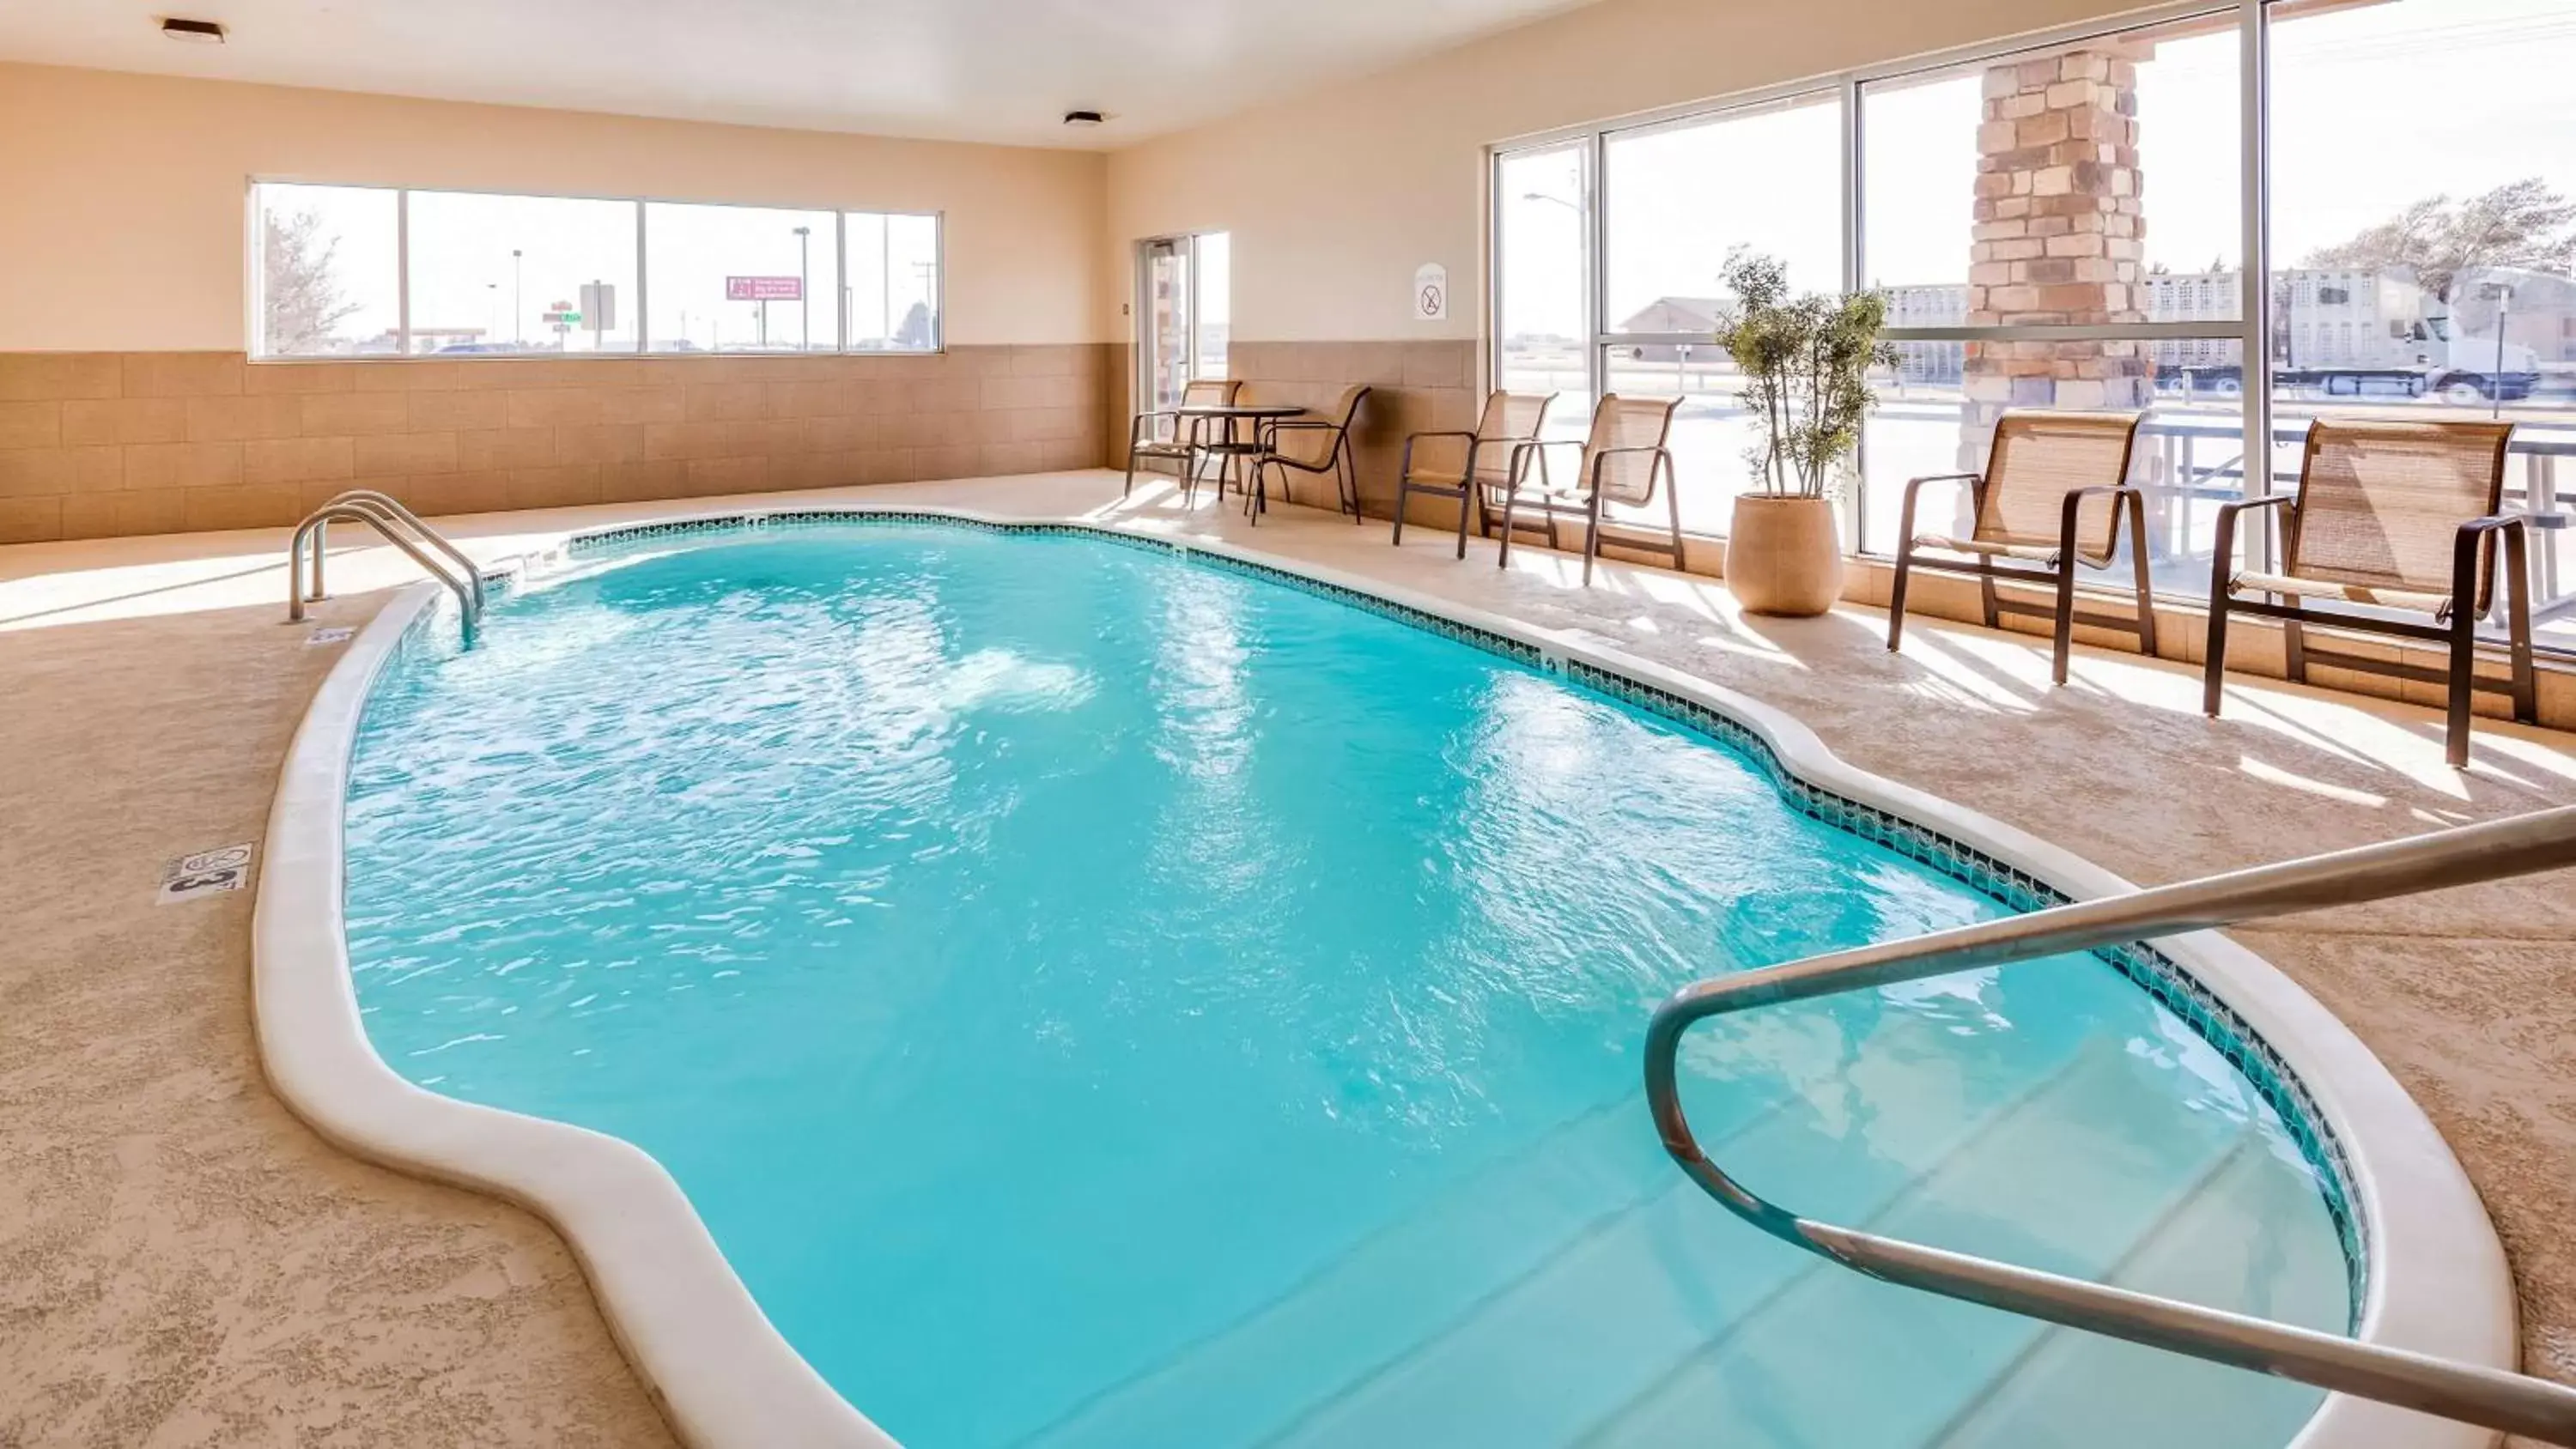 On site, Swimming Pool in Best Western El-Quartelejo Inn & Suites